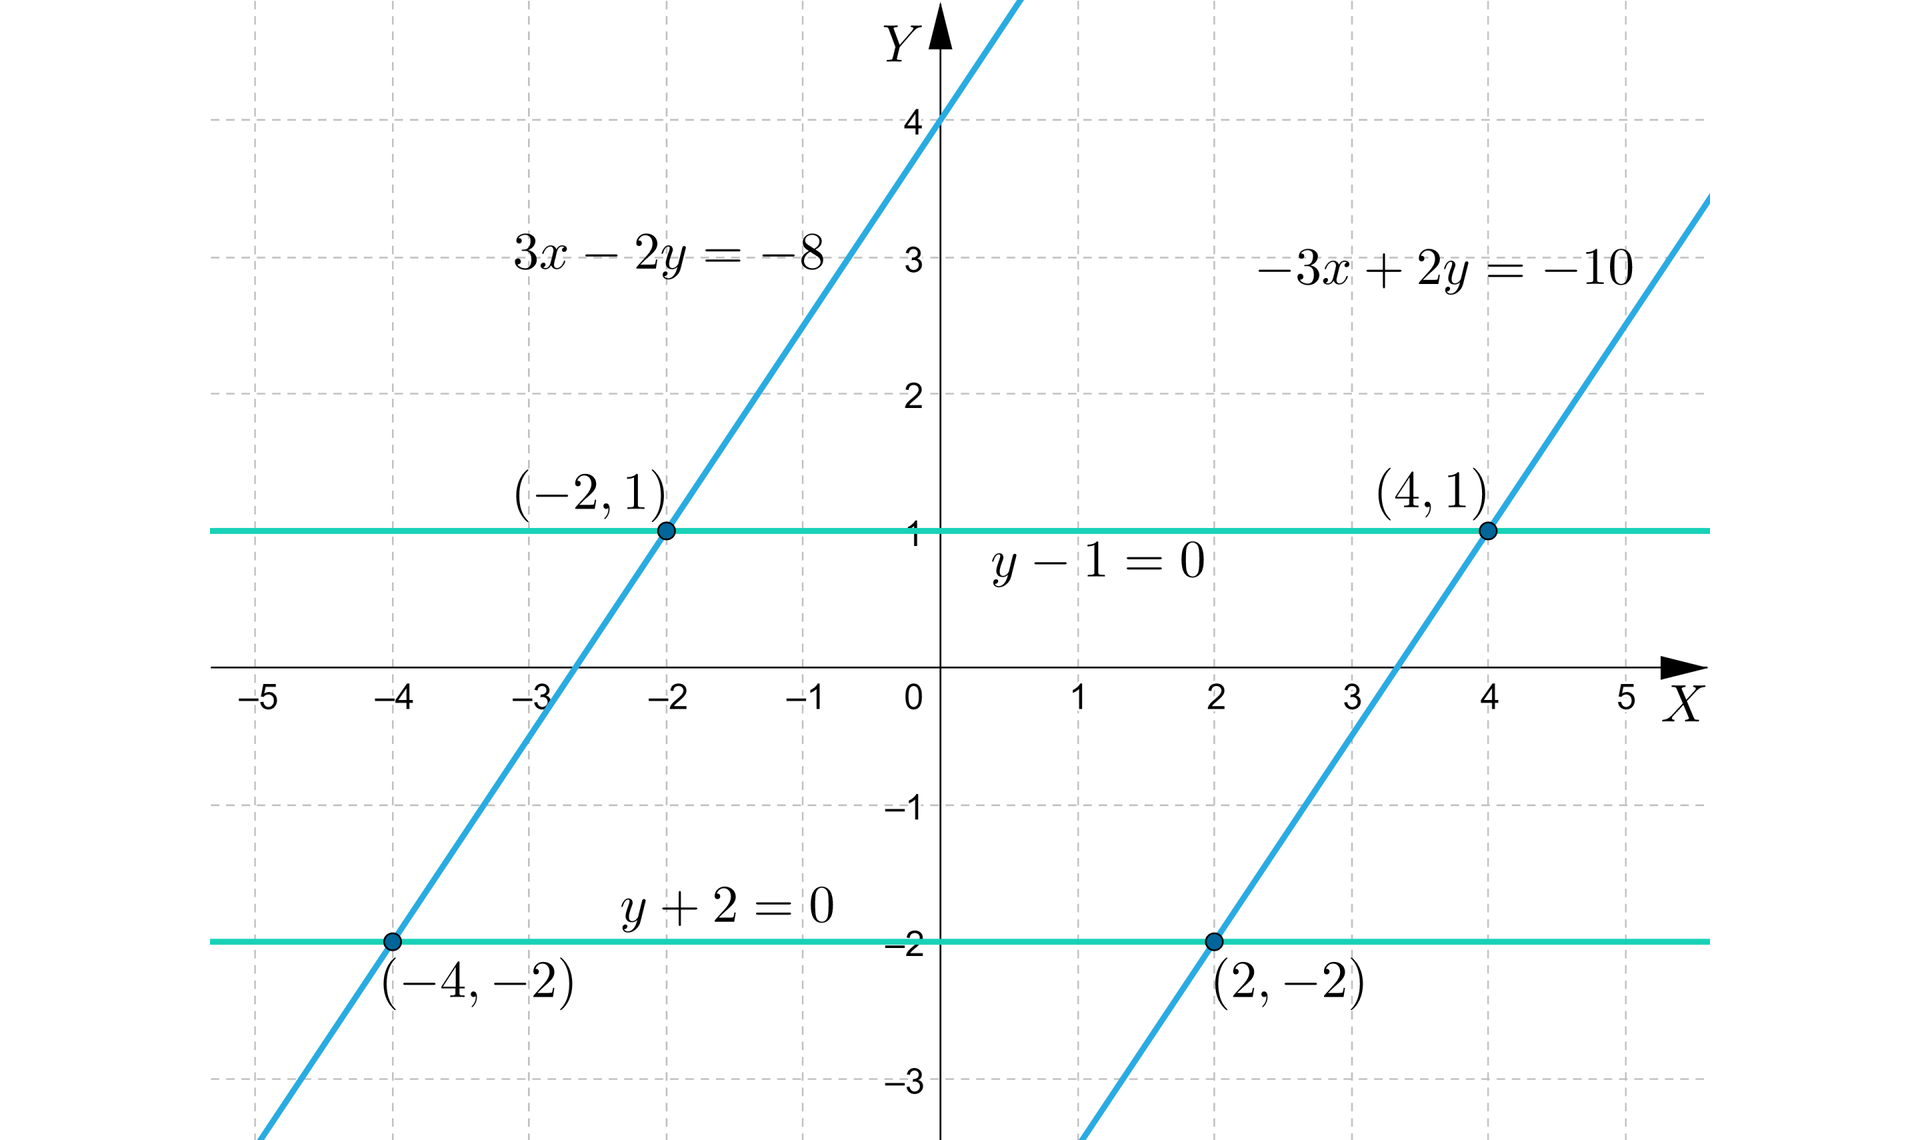 Ilustracja przedstawia układ współrzędnych z poziomą osią X od minus pięciu do pięciu oraz pionową osią Y od minus trzech do czterech. Na płaszczyźnie narysowano cztery proste: dwie poziome i dwie ukośne. Ukośne proste są równoległe. Miejsca przecięcia wszystkich prostych wyznaczają wierzchołki równoległoboku. Są to punkty o współrzędnych -2,1, -4,-2, 2,-2 oraz 4,1